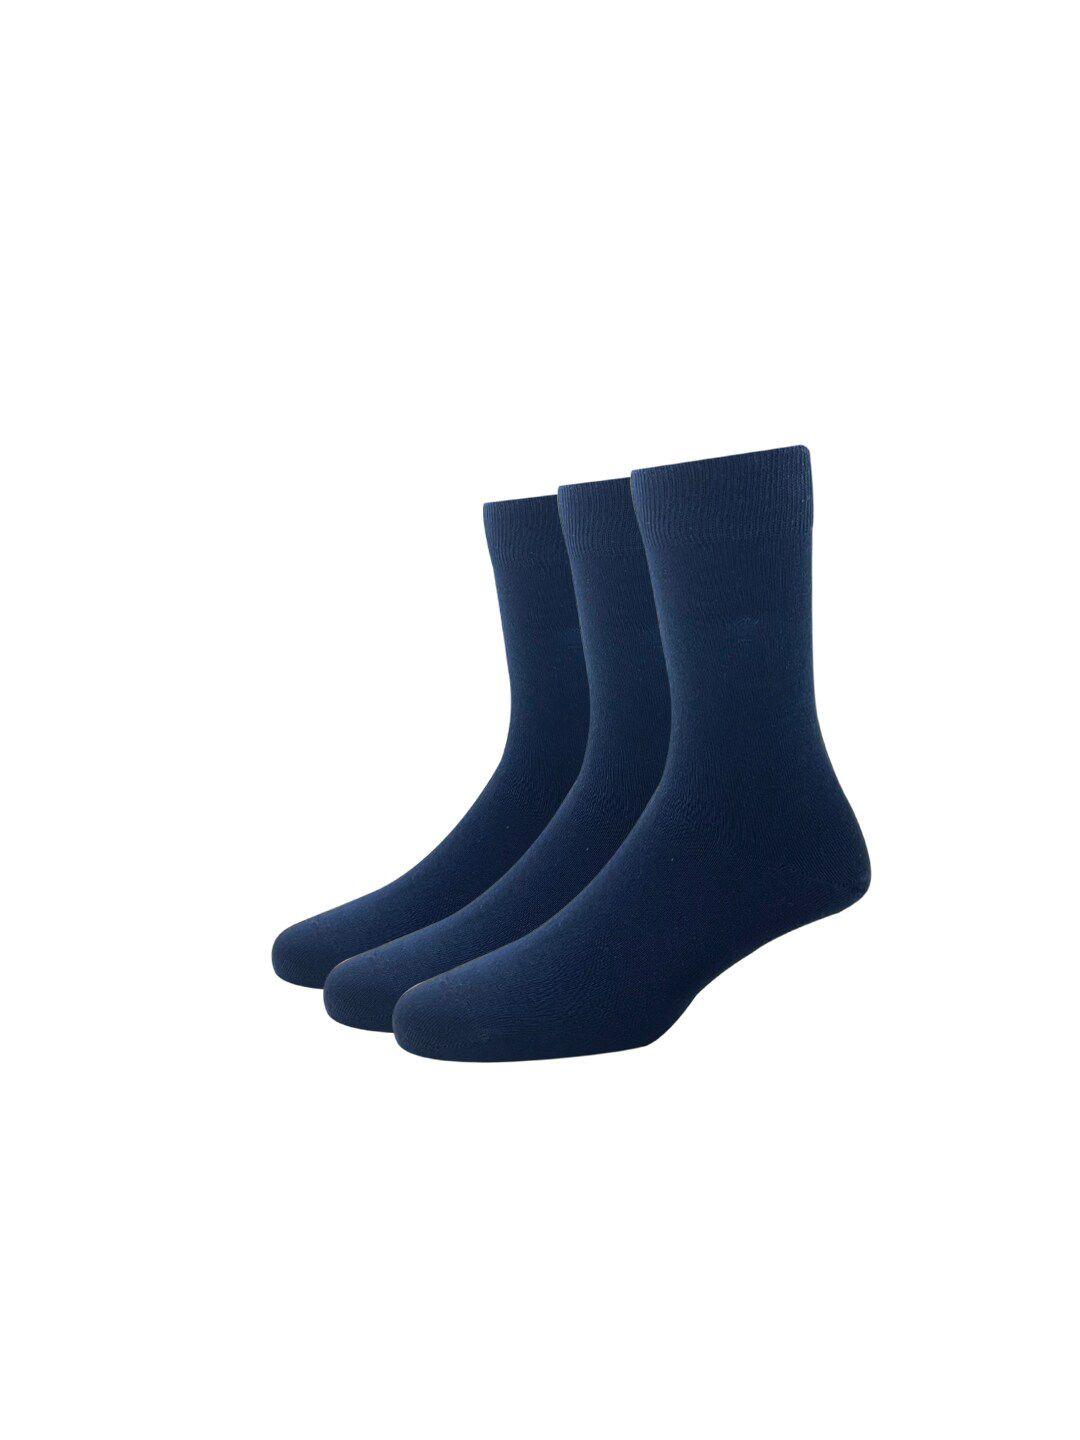 louis philippe men navy blue pack of 3 cotton full length socks